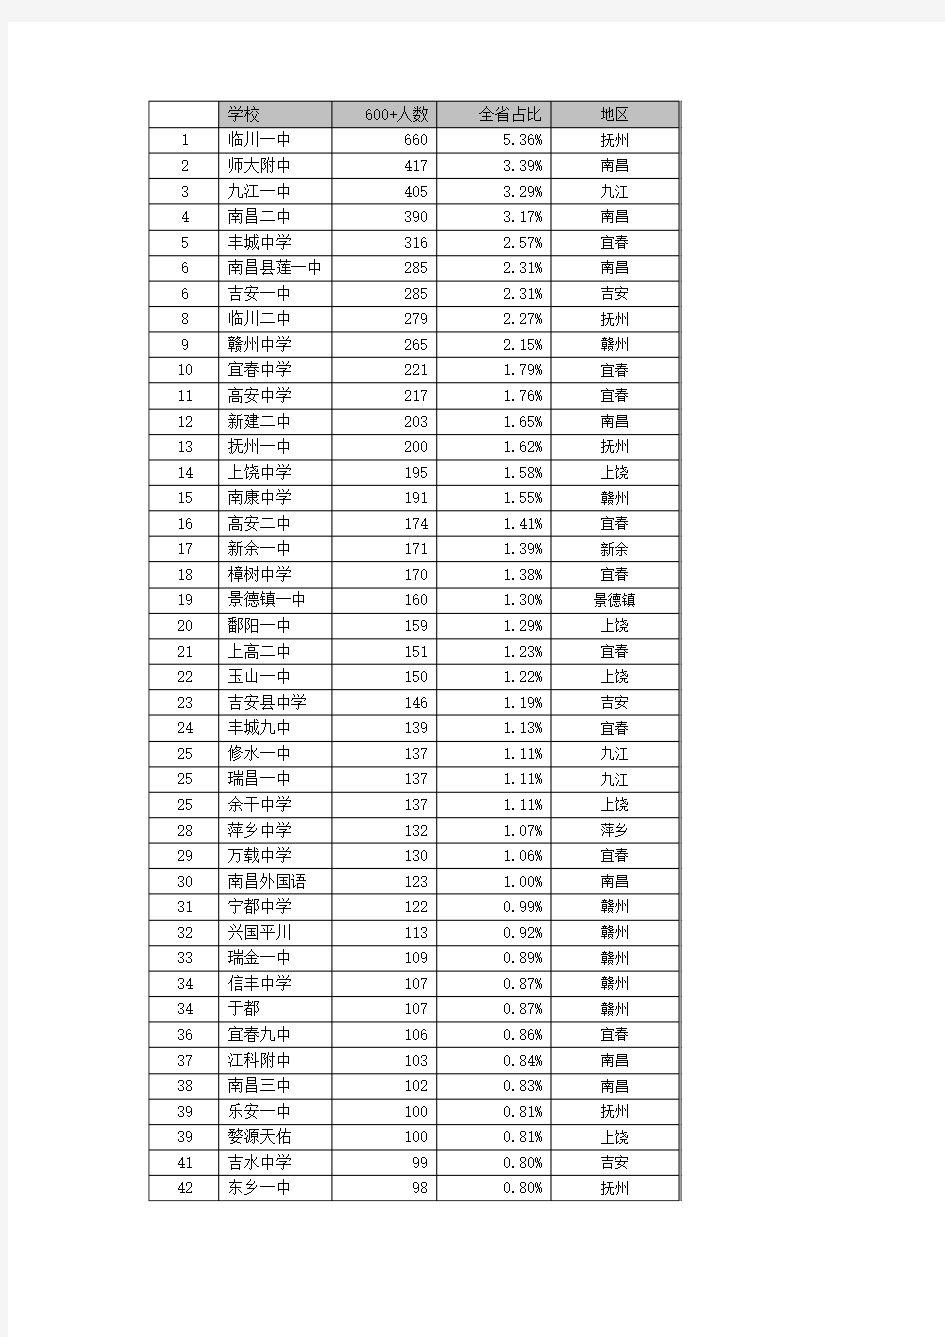 江西省高考600分以上分布图